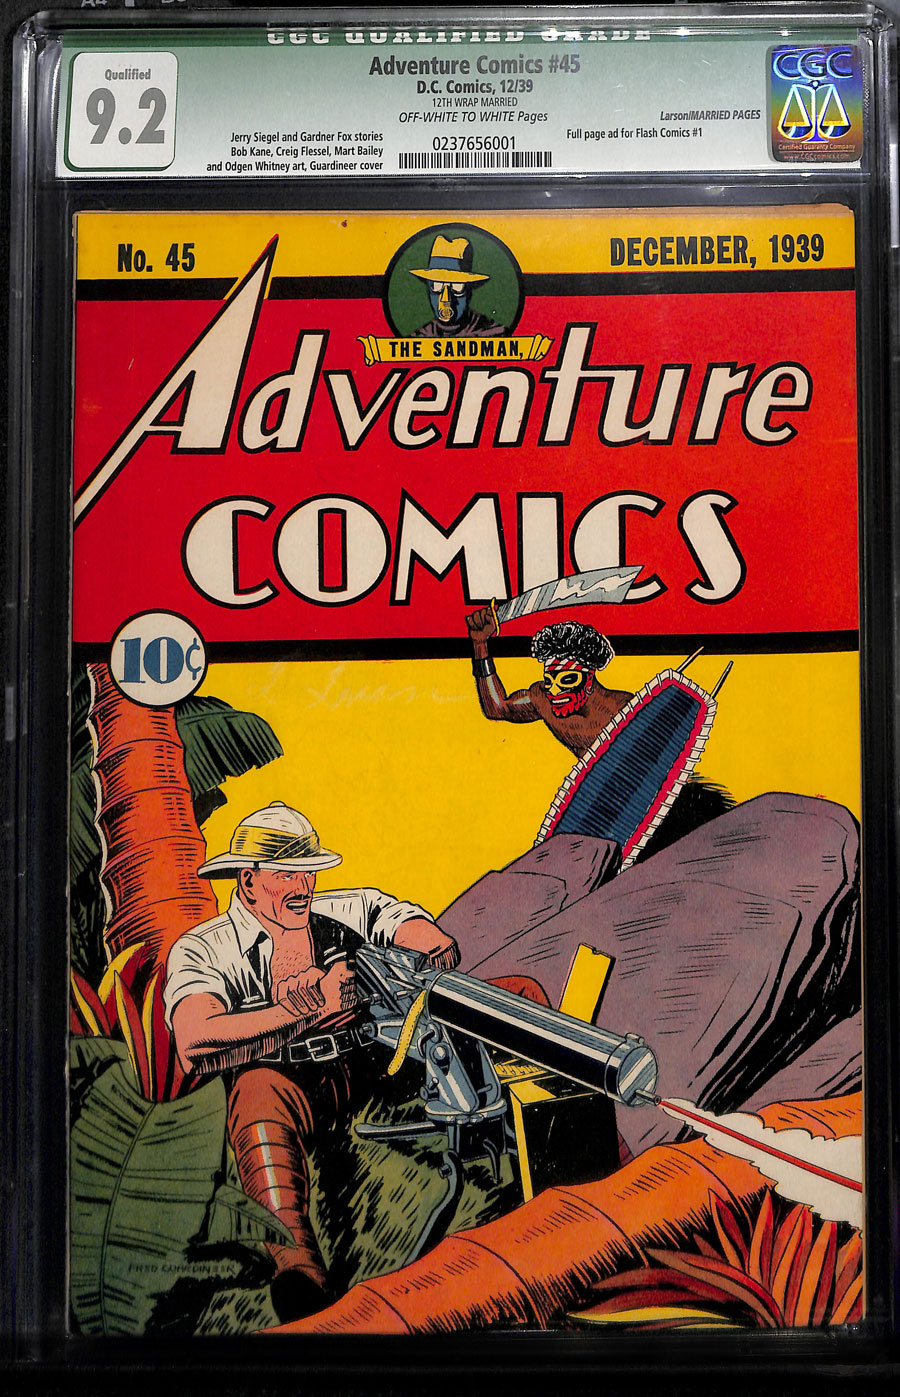 Bond Adventures комиксы. Gabo Comics 45. Комикс приключения 18